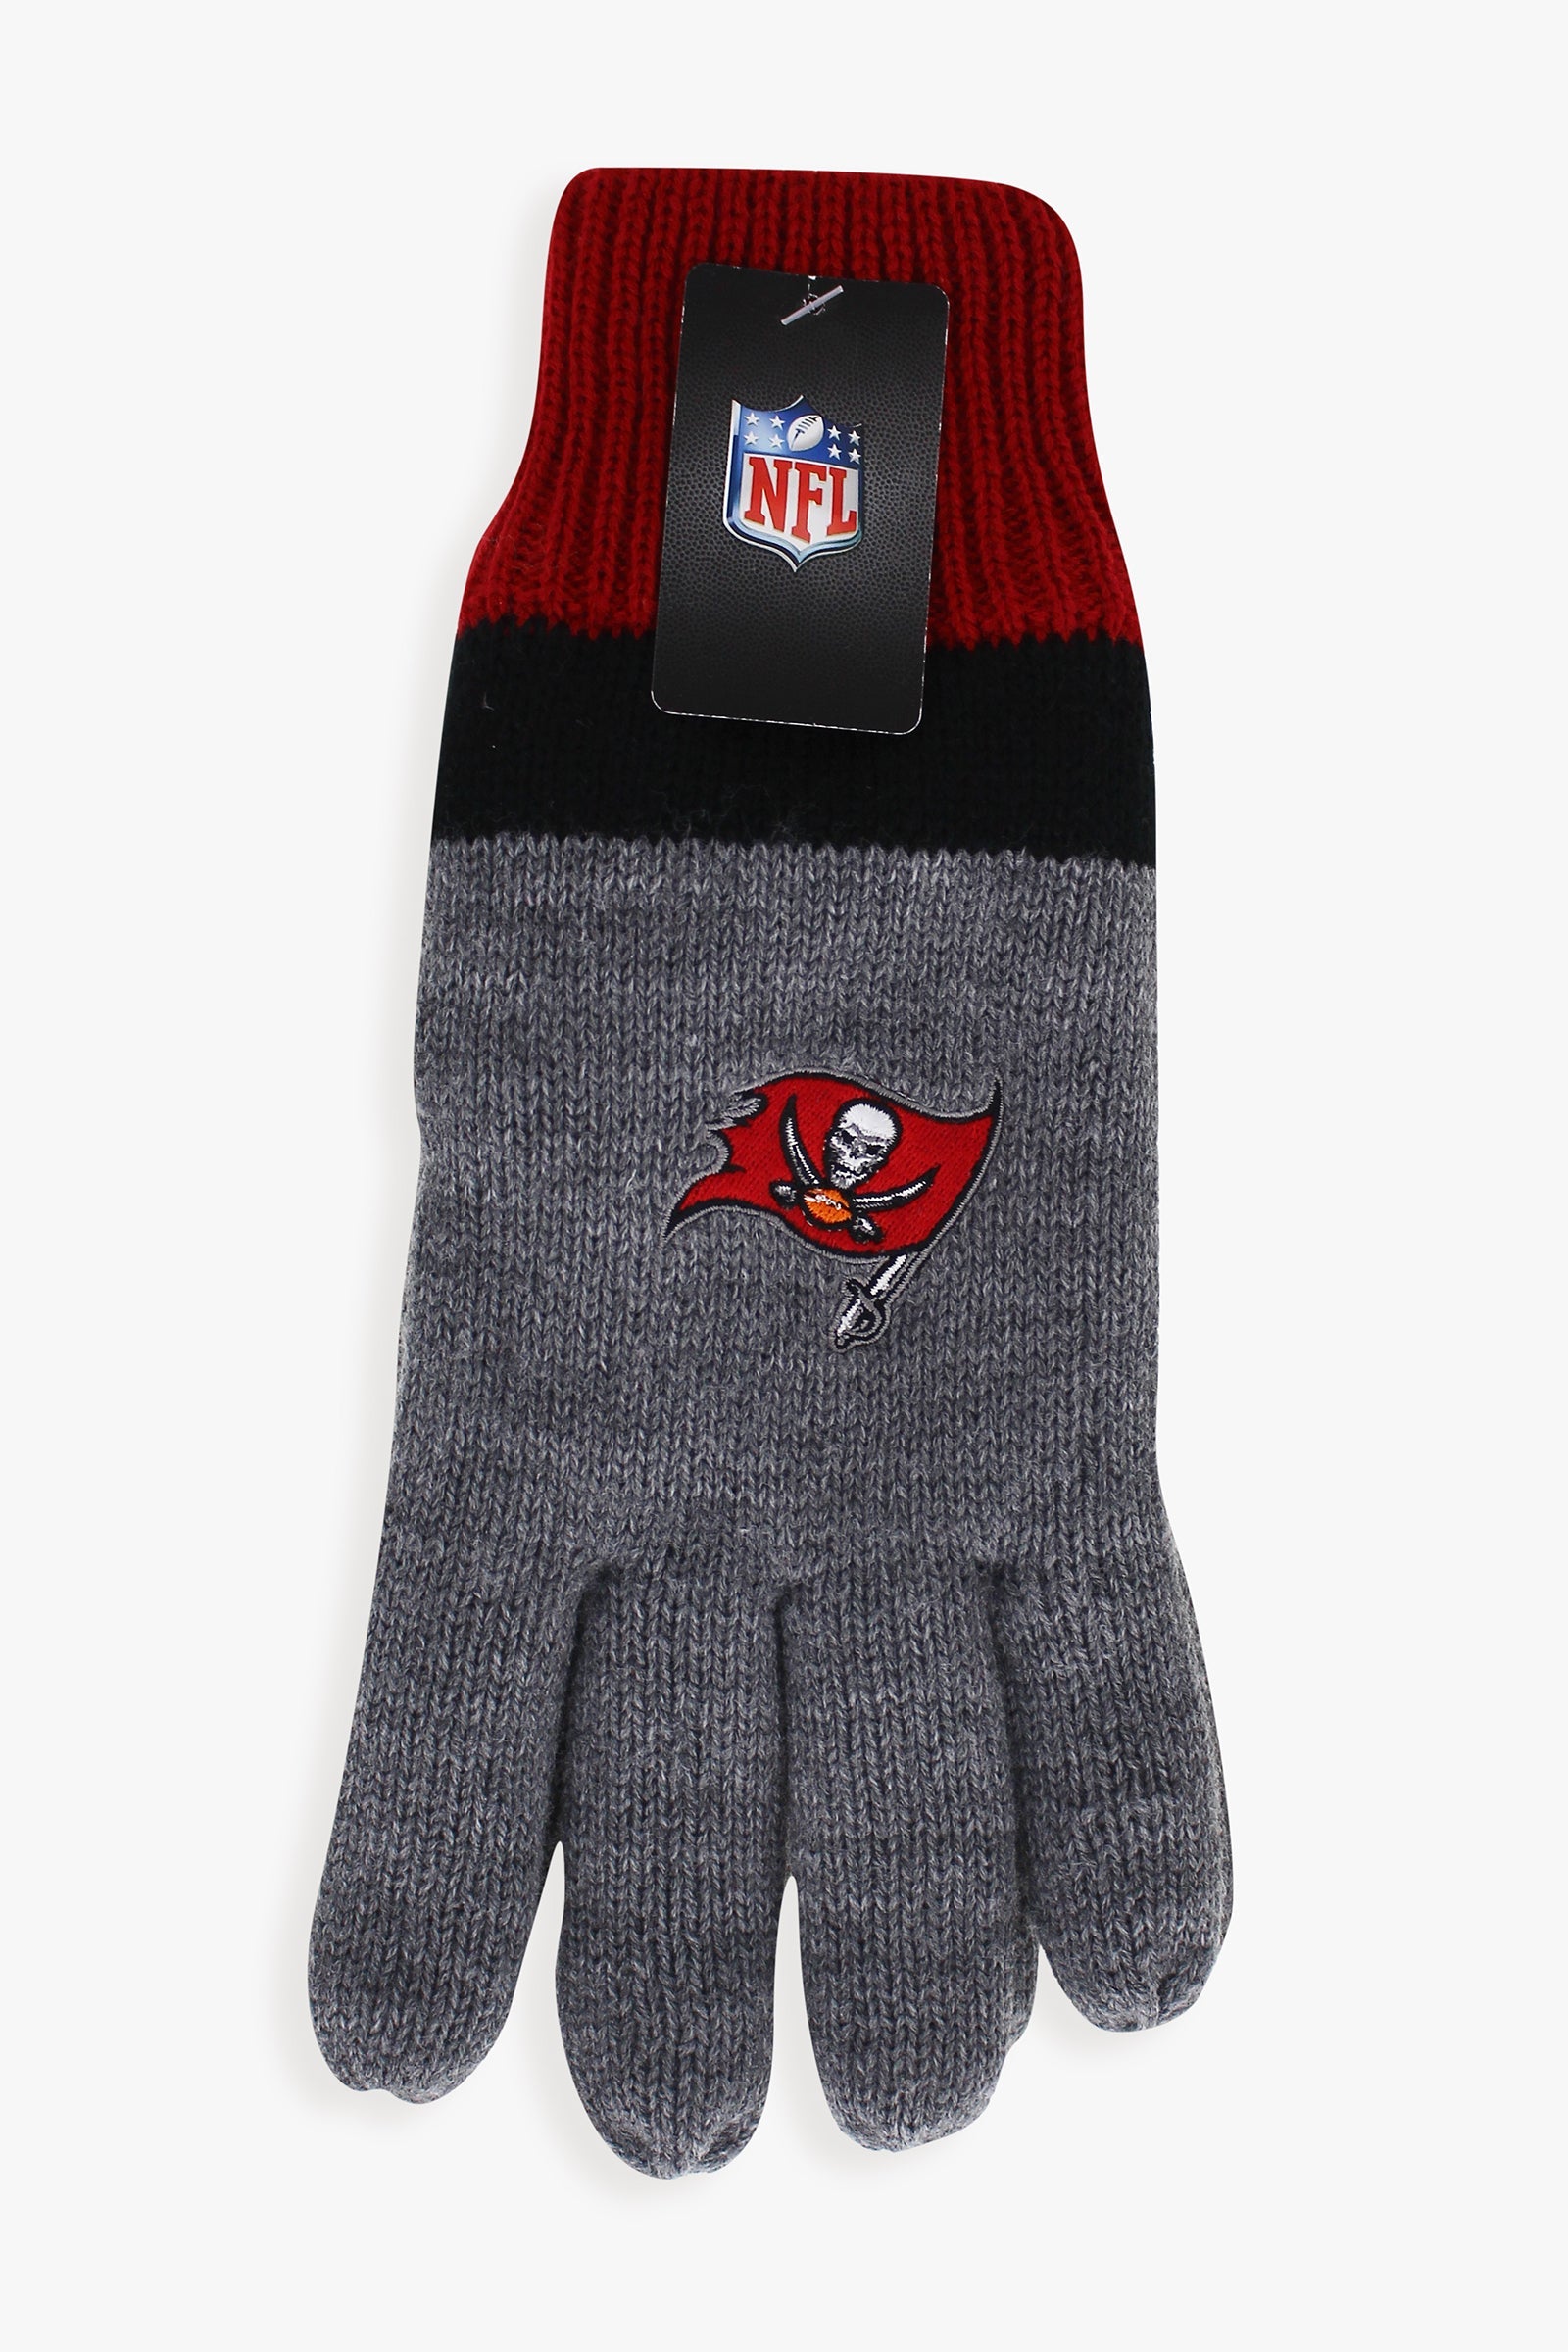 Gertex NFL Men's Lined Winter Cold Weather Gloves